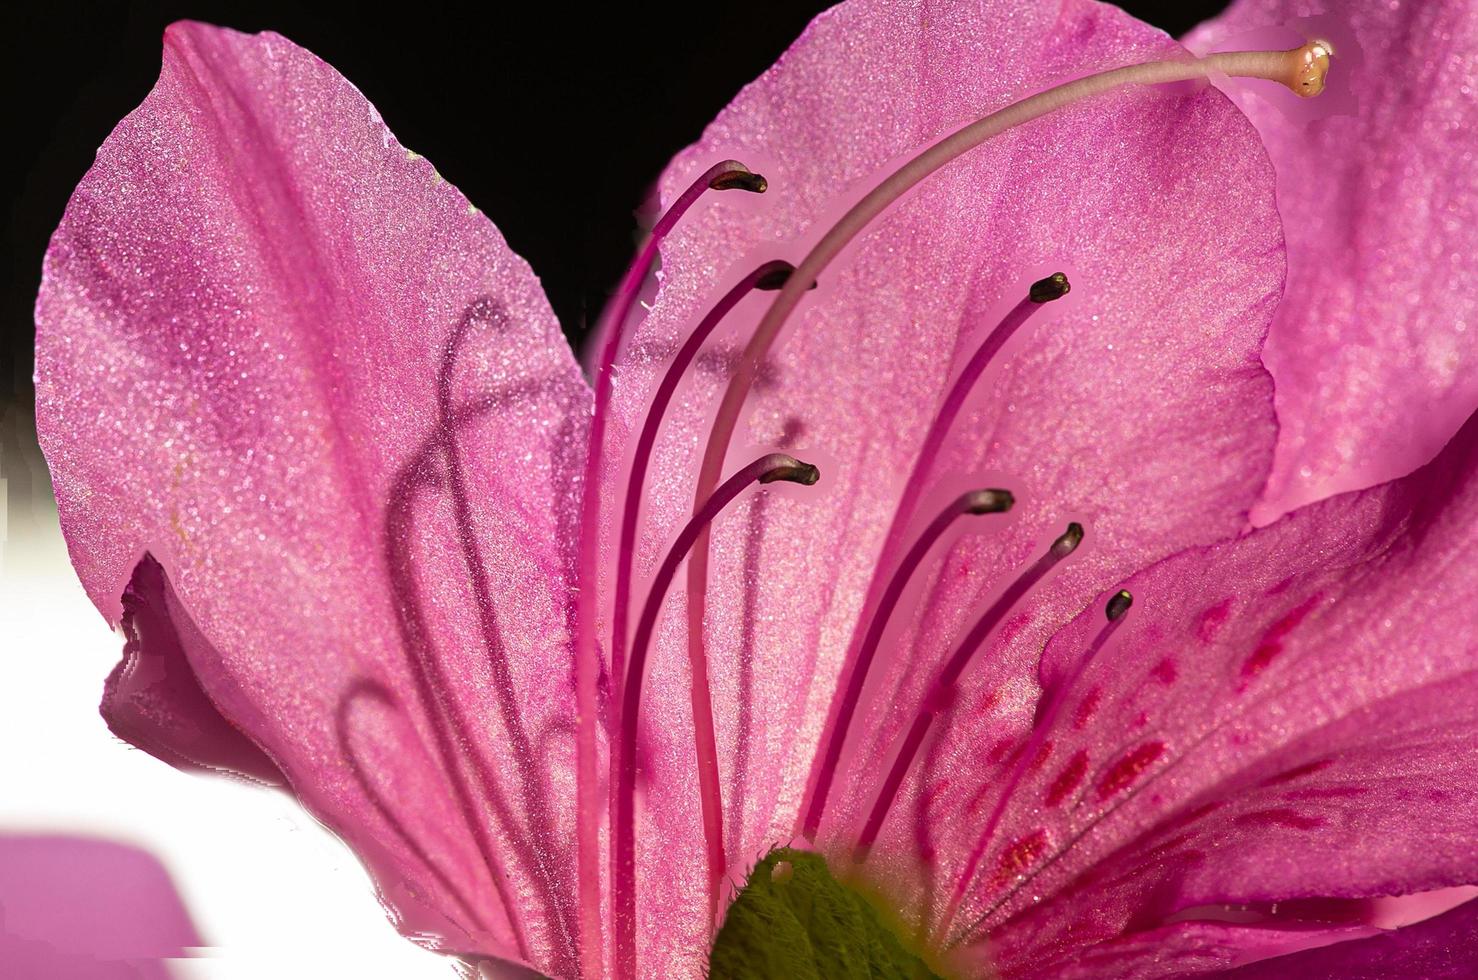 rosa blomma med ståndare och pistiller foto